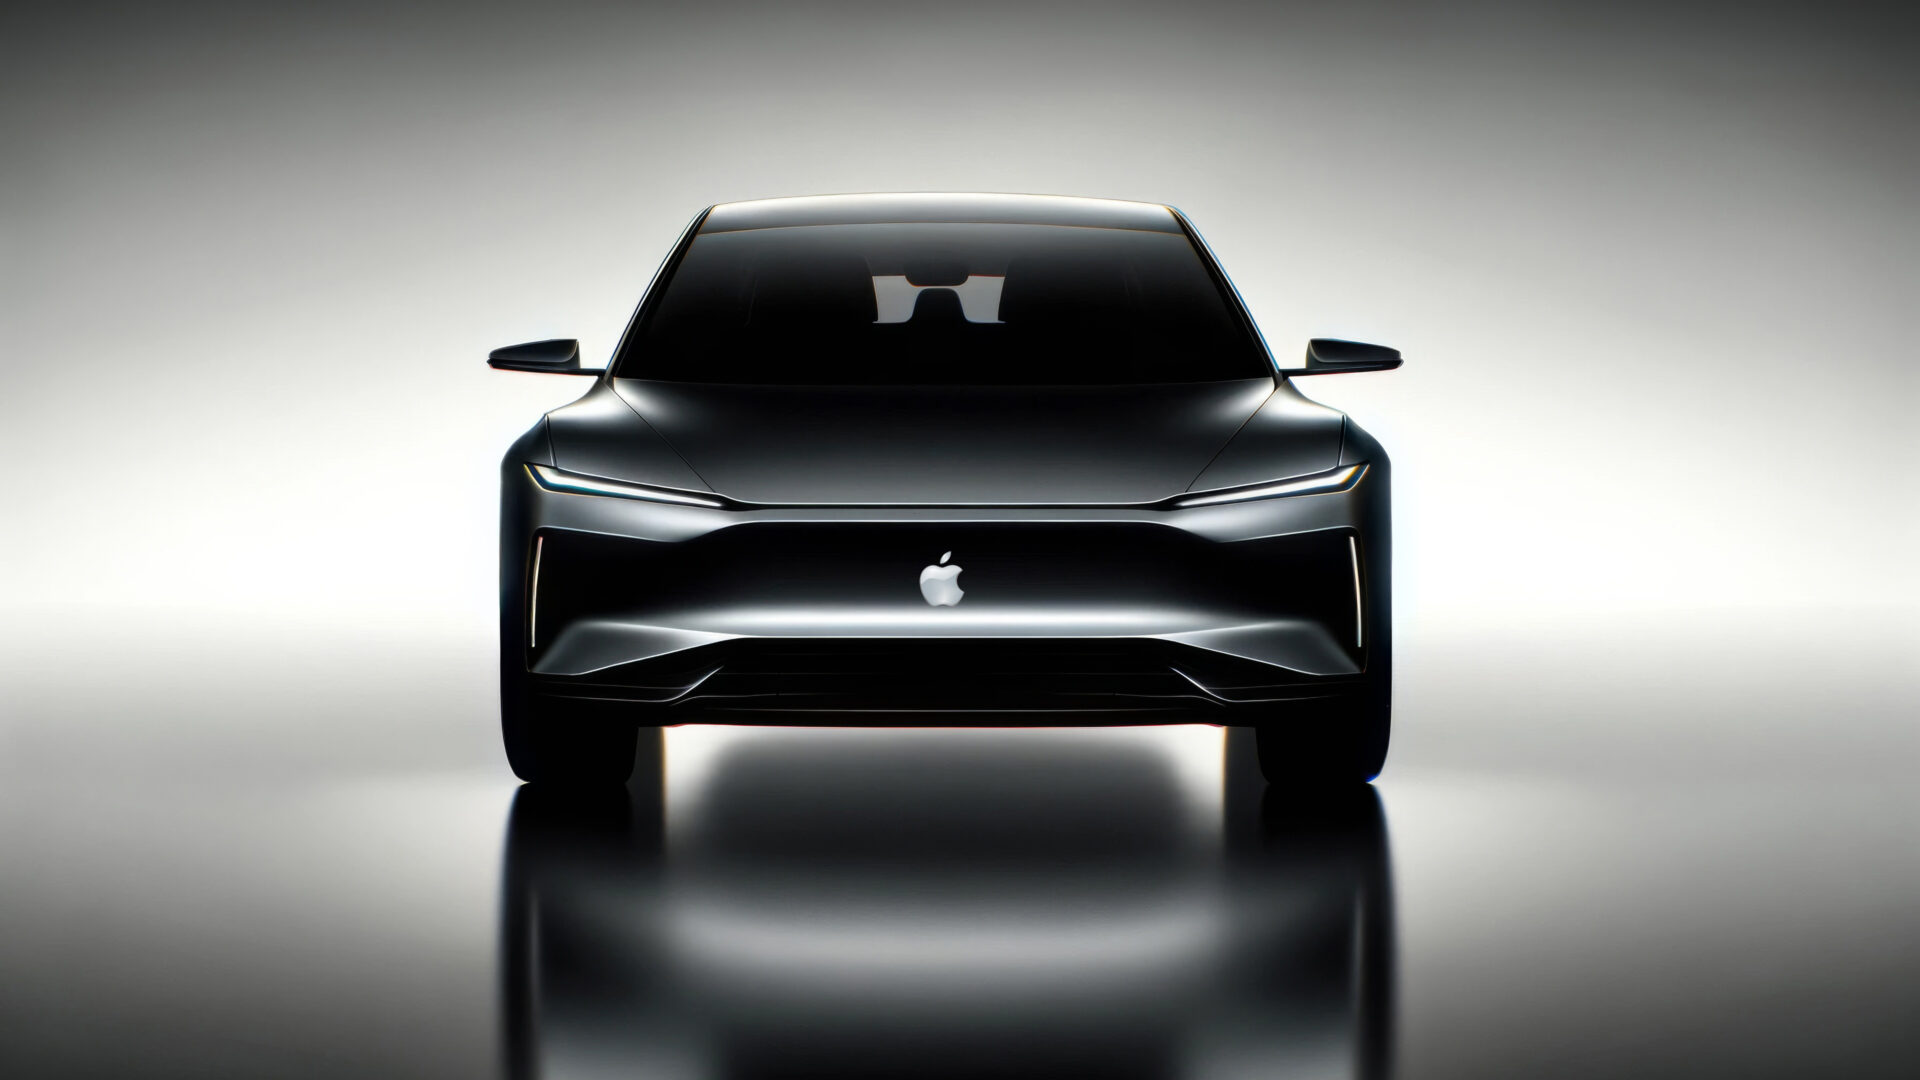 Apple Car: Blir 2028 året?